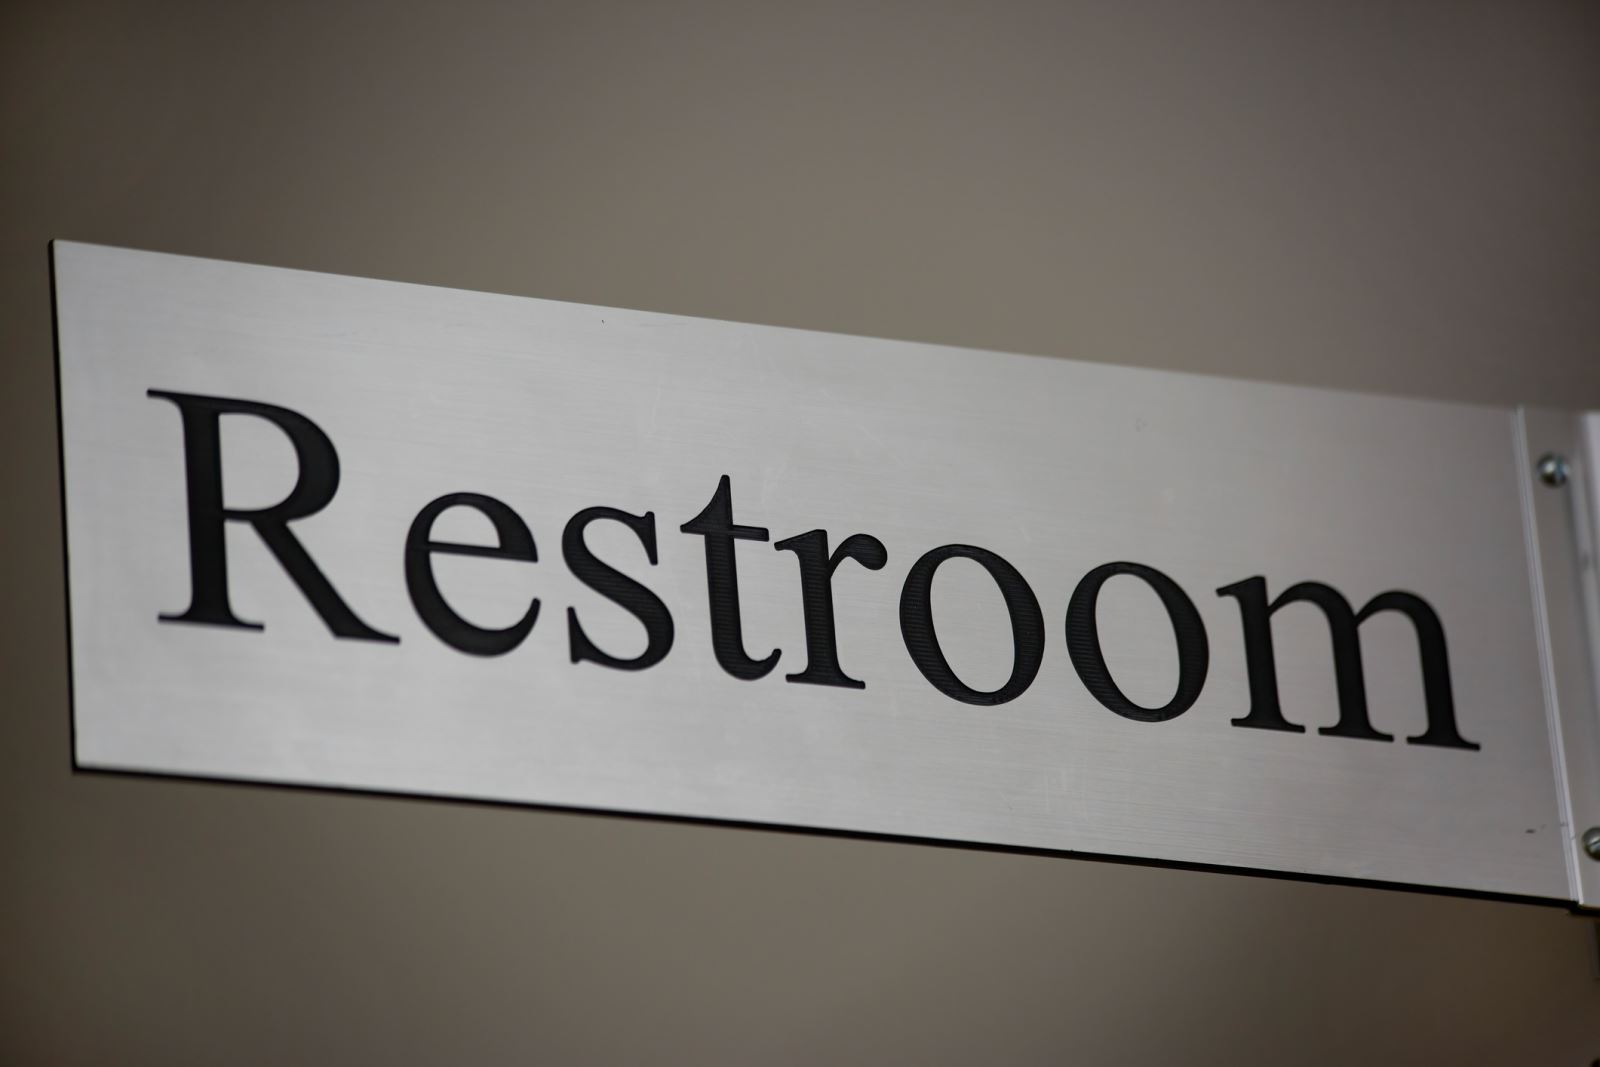 Image of restroom sign